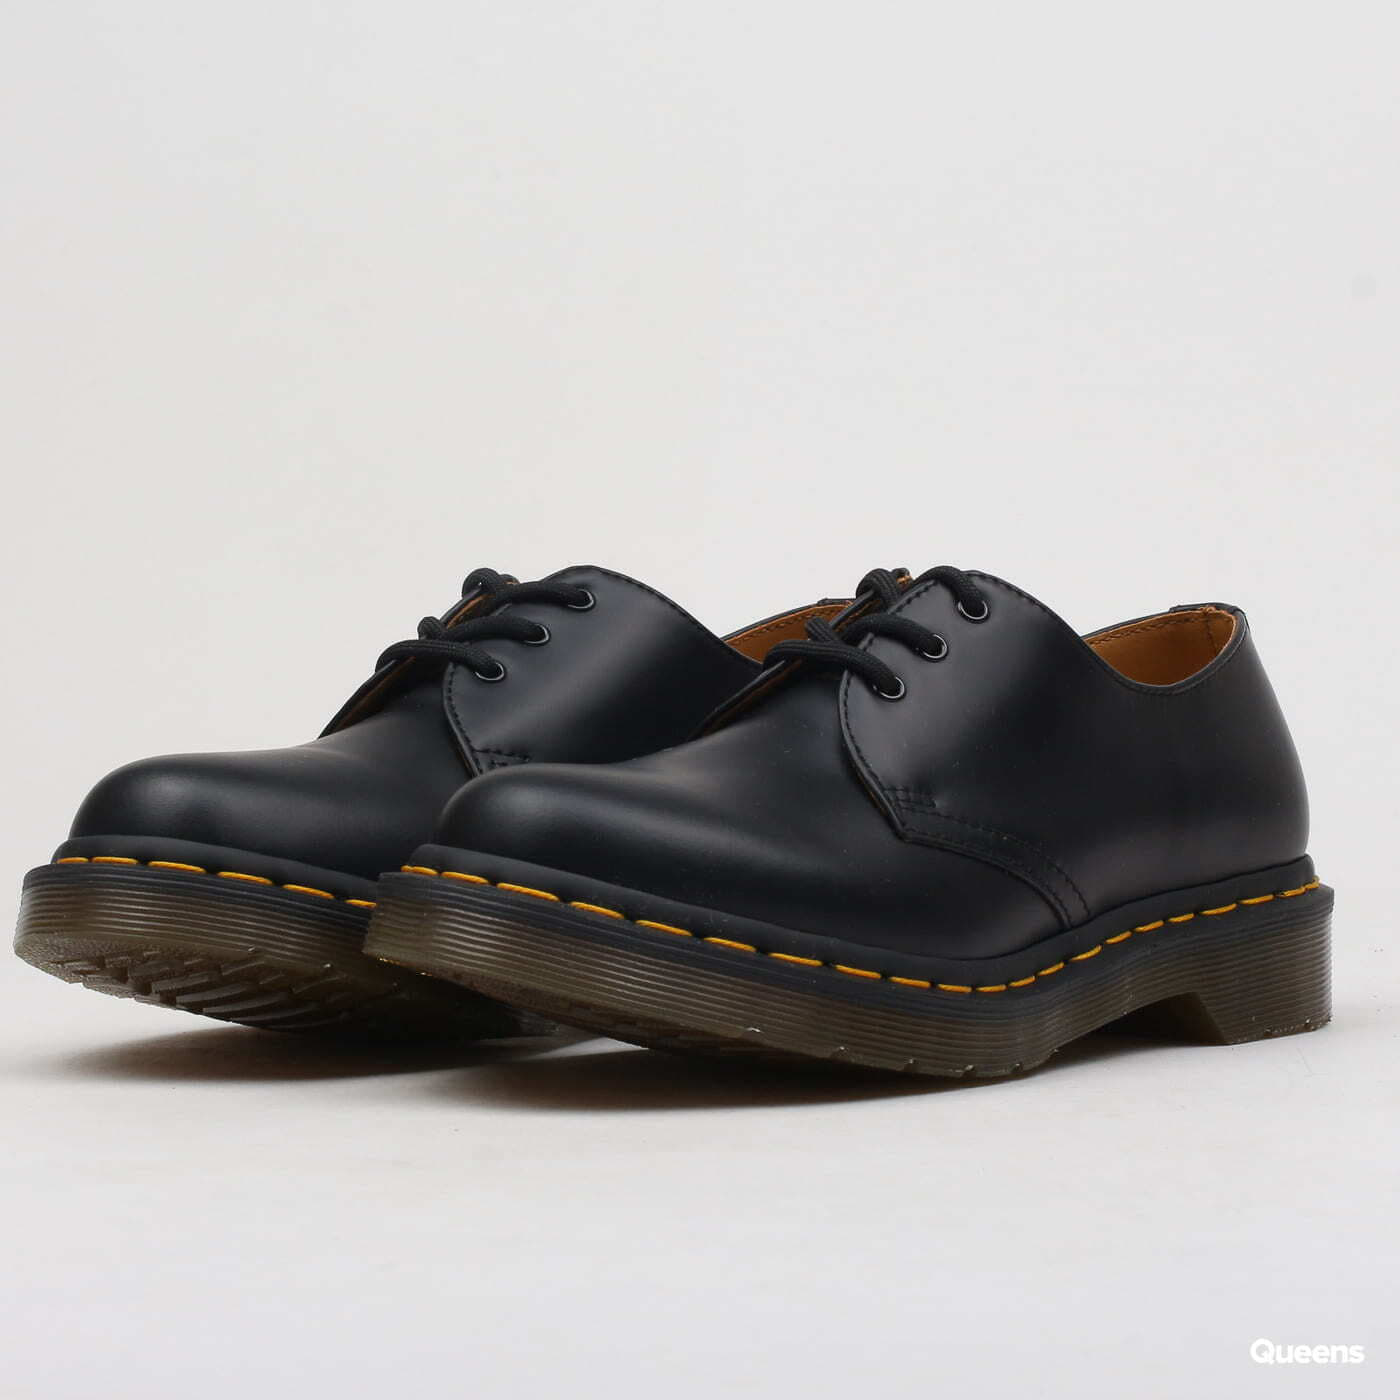 Încălțăminte și sneakerși pentru femei Dr. Martens 1461 W black smooth